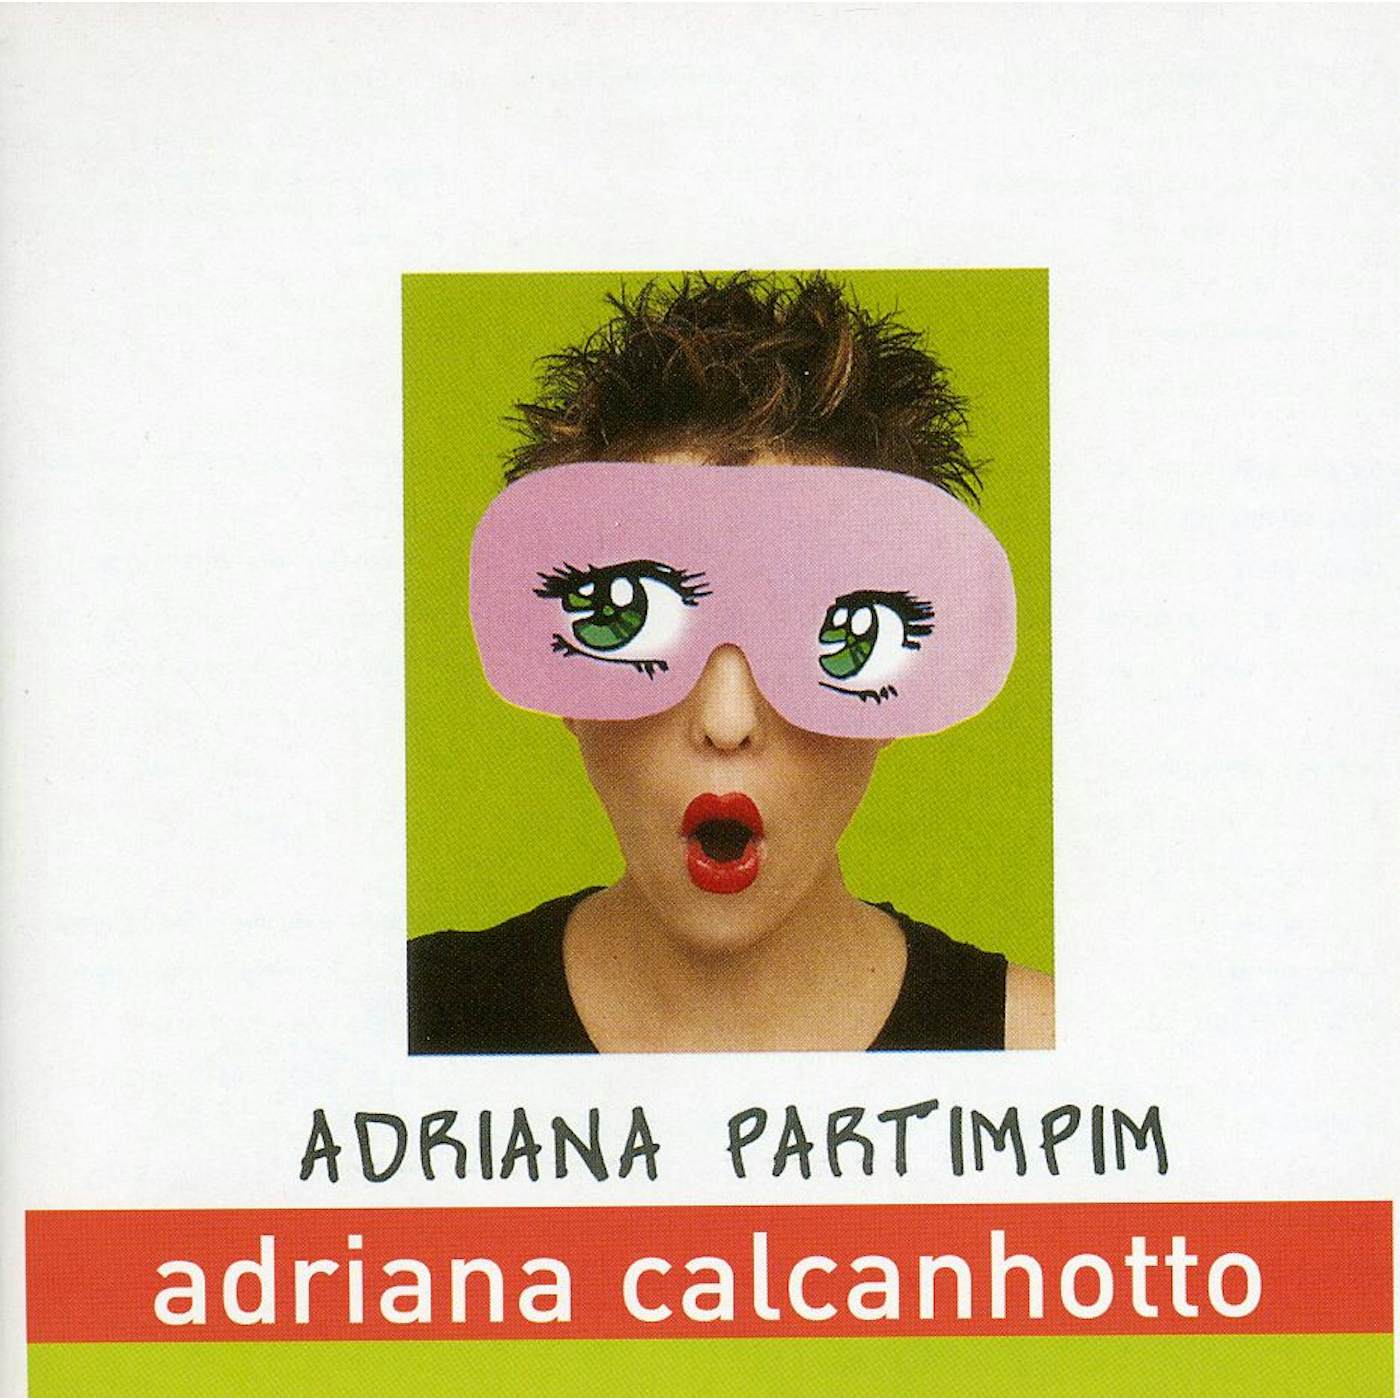 Adriana Calcanhotto ADRIANA PARTIMPIM CD